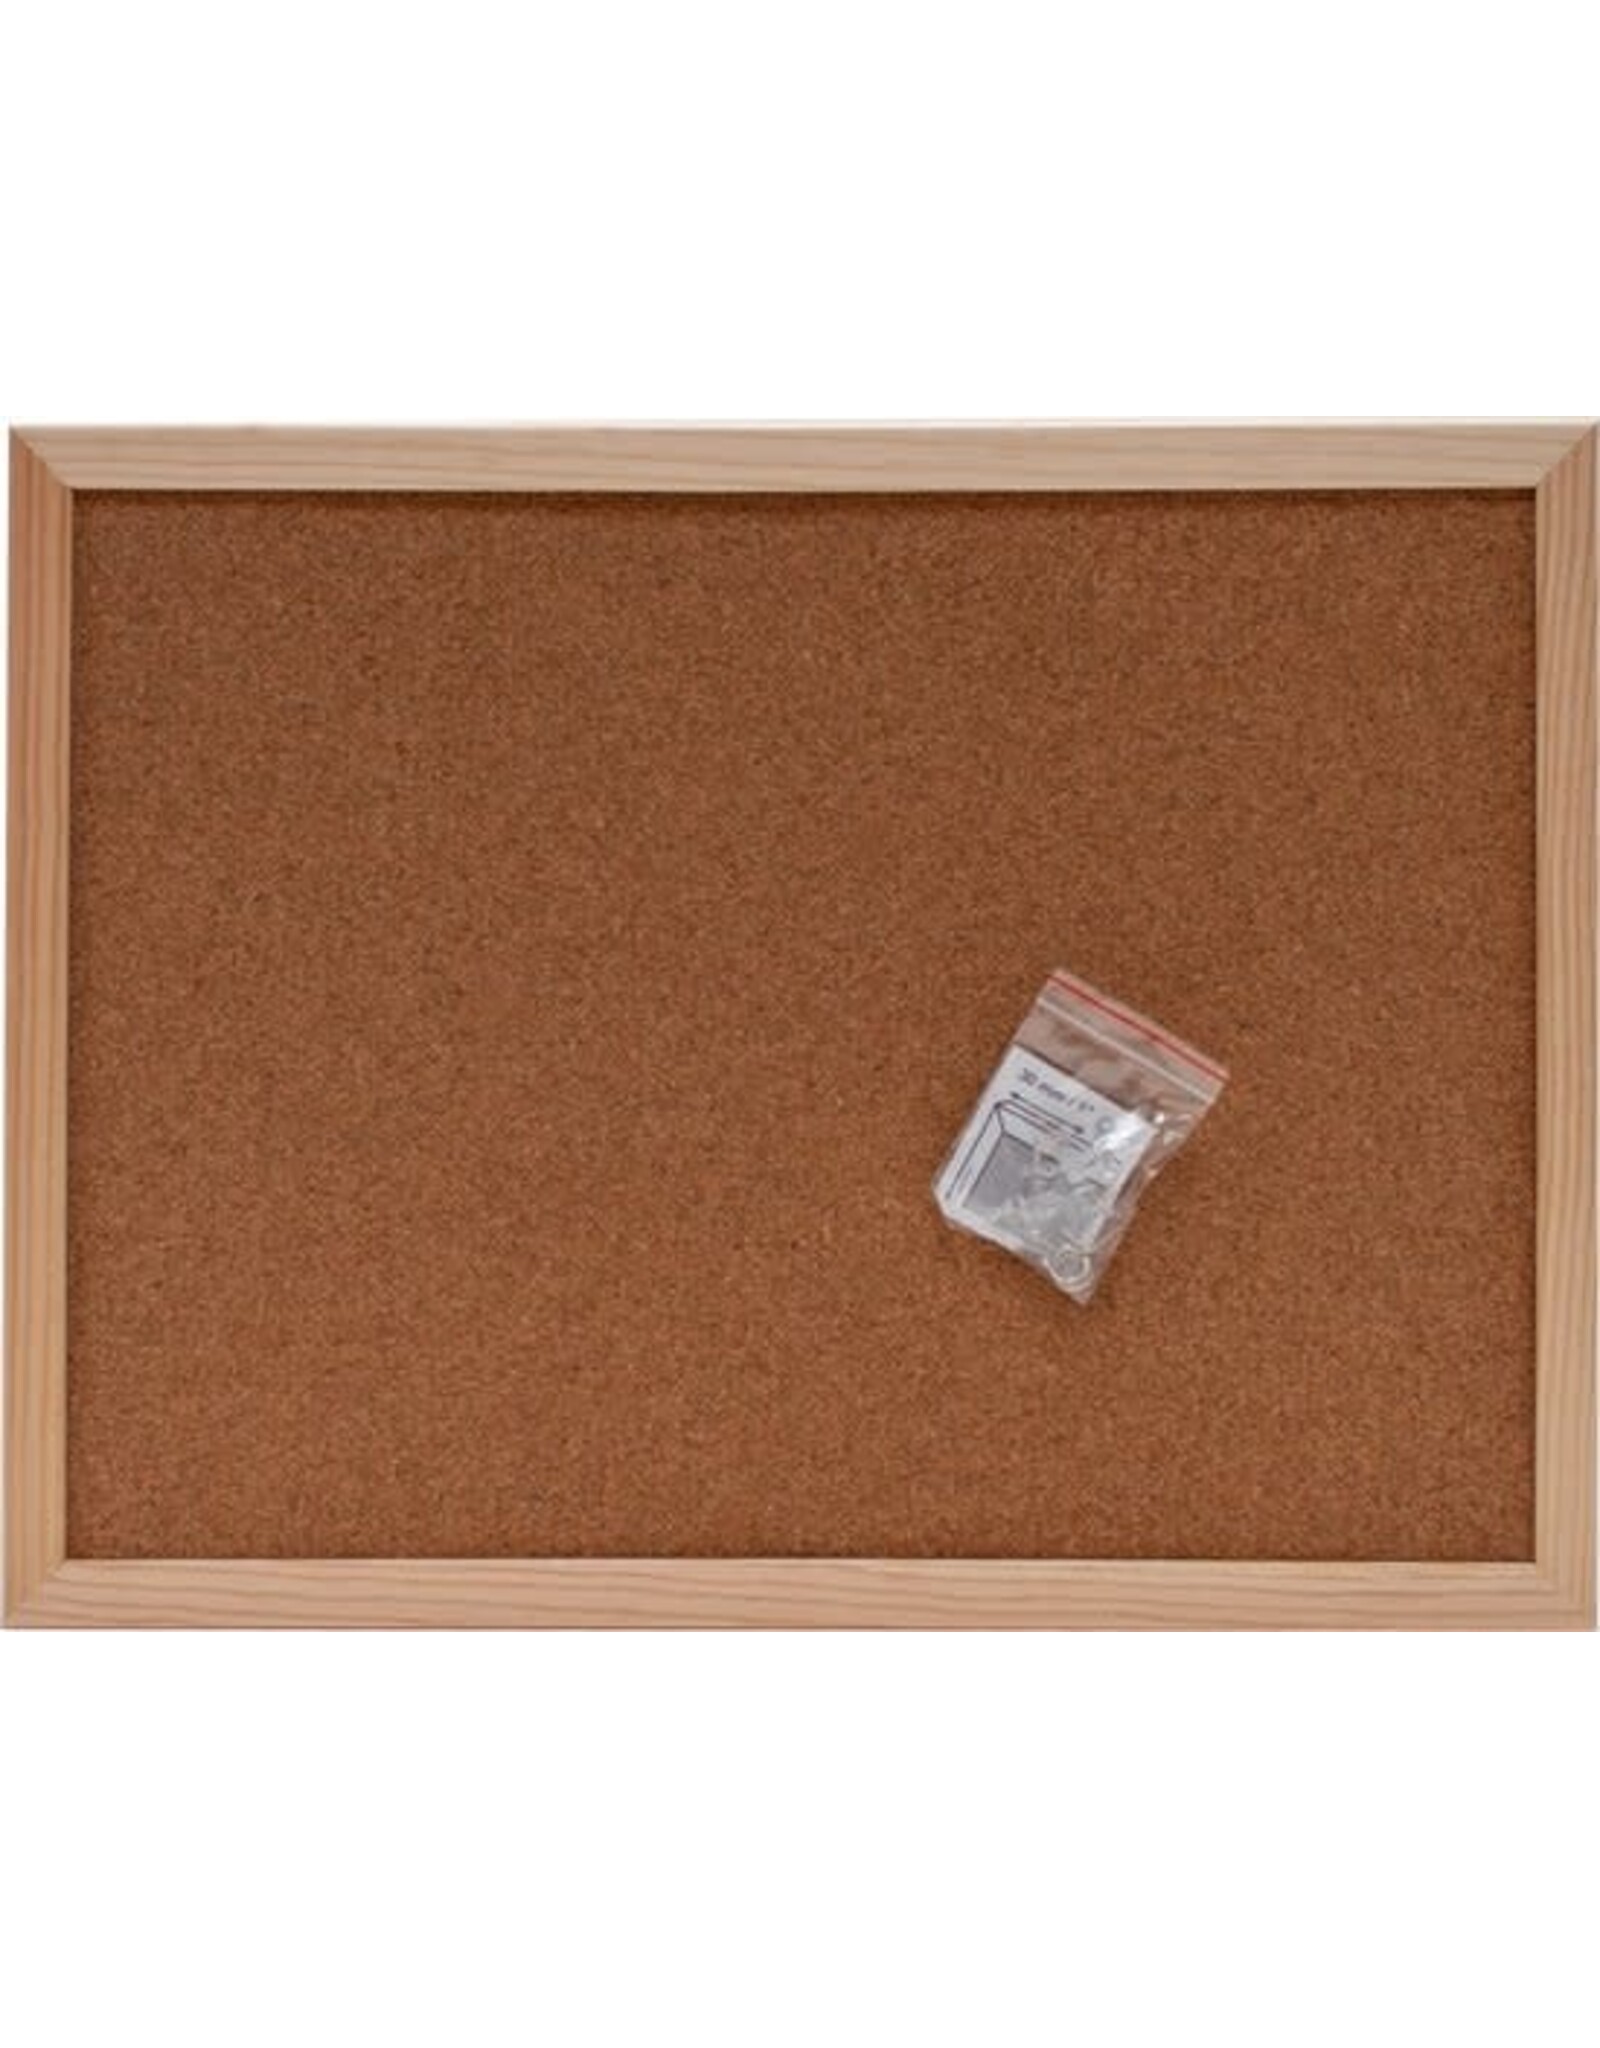 SOHO SOHO Prikbord – Prikbord van kurk – Met houten omlijsting – Inclusief punaises – 30 x 40 cm